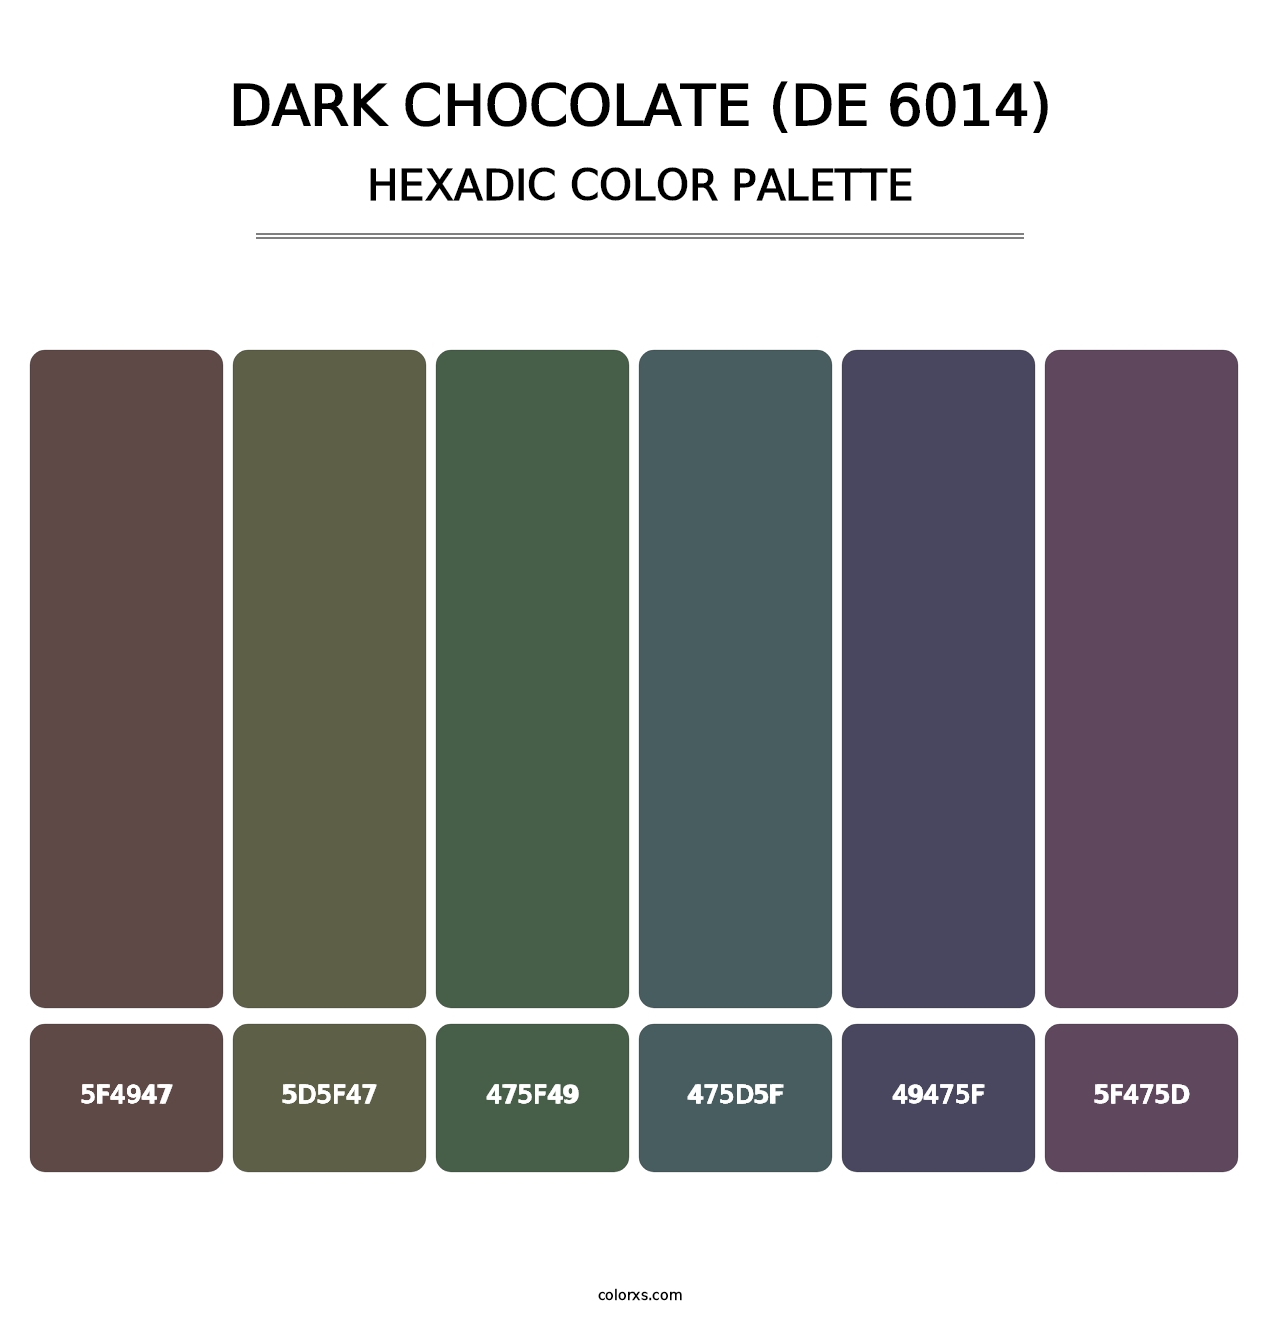 Dark Chocolate (DE 6014) - Hexadic Color Palette